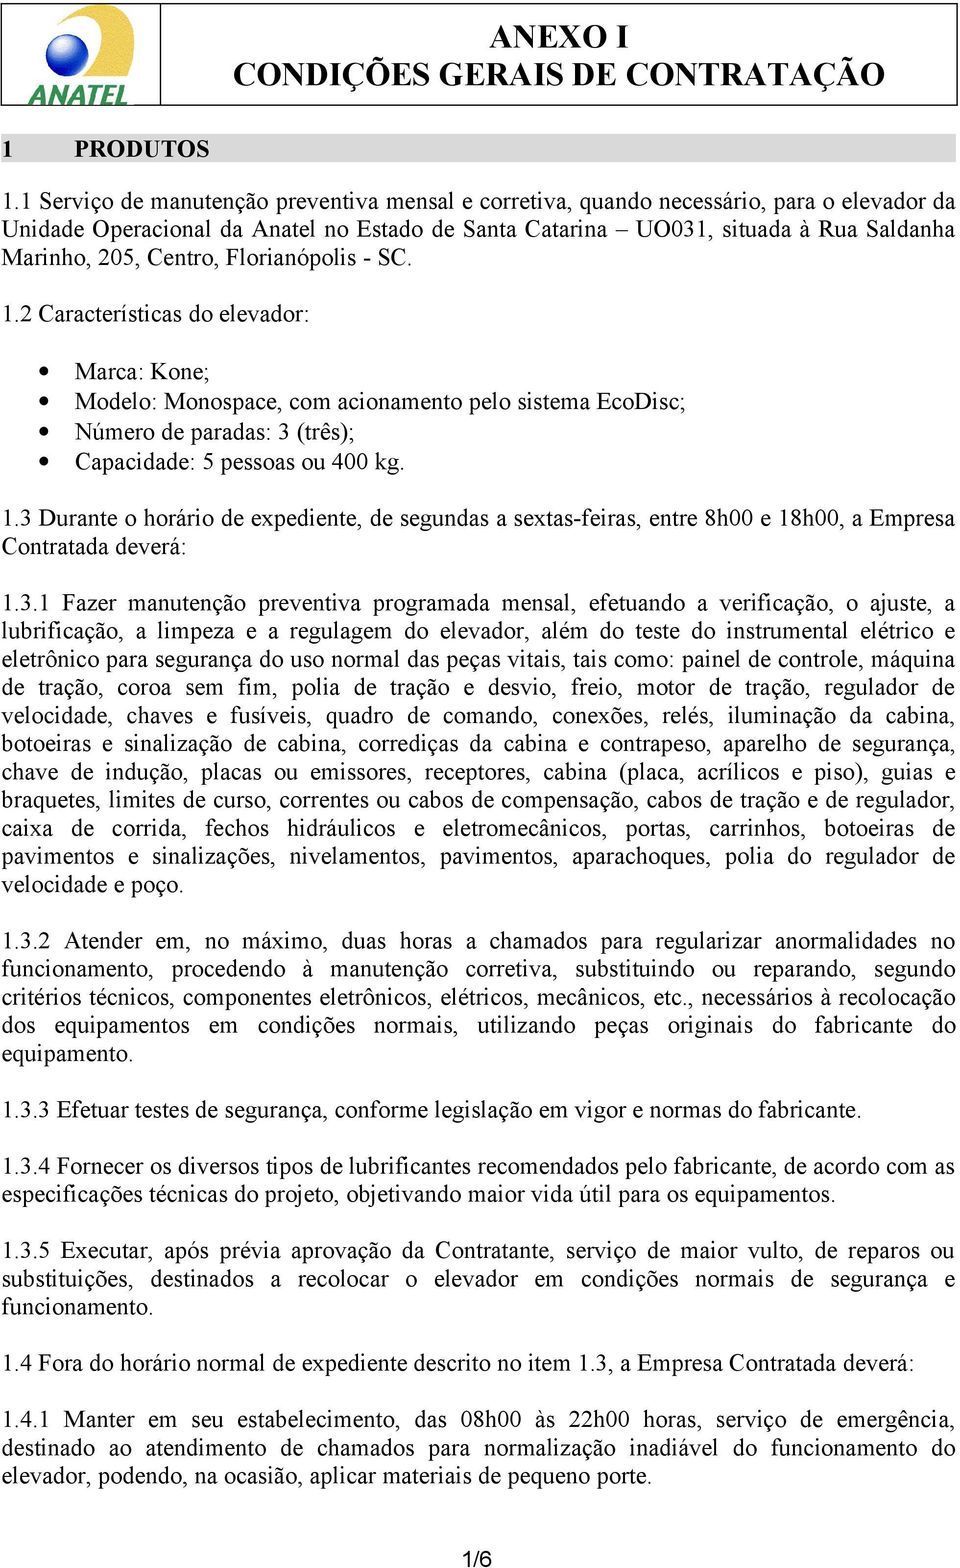 Centro, Florianópolis - SC. 1.2 Características do elevador: Marca: Kone; Modelo: Monospace, com acionamento pelo sistema EcoDisc; Número de paradas: 3 (três); Capacidade: 5 pessoas ou 400 kg. 1.3 Durante o horário de expediente, de segundas a sextas-feiras, entre 8h00 e 18h00, a Empresa Contratada deverá: 1.